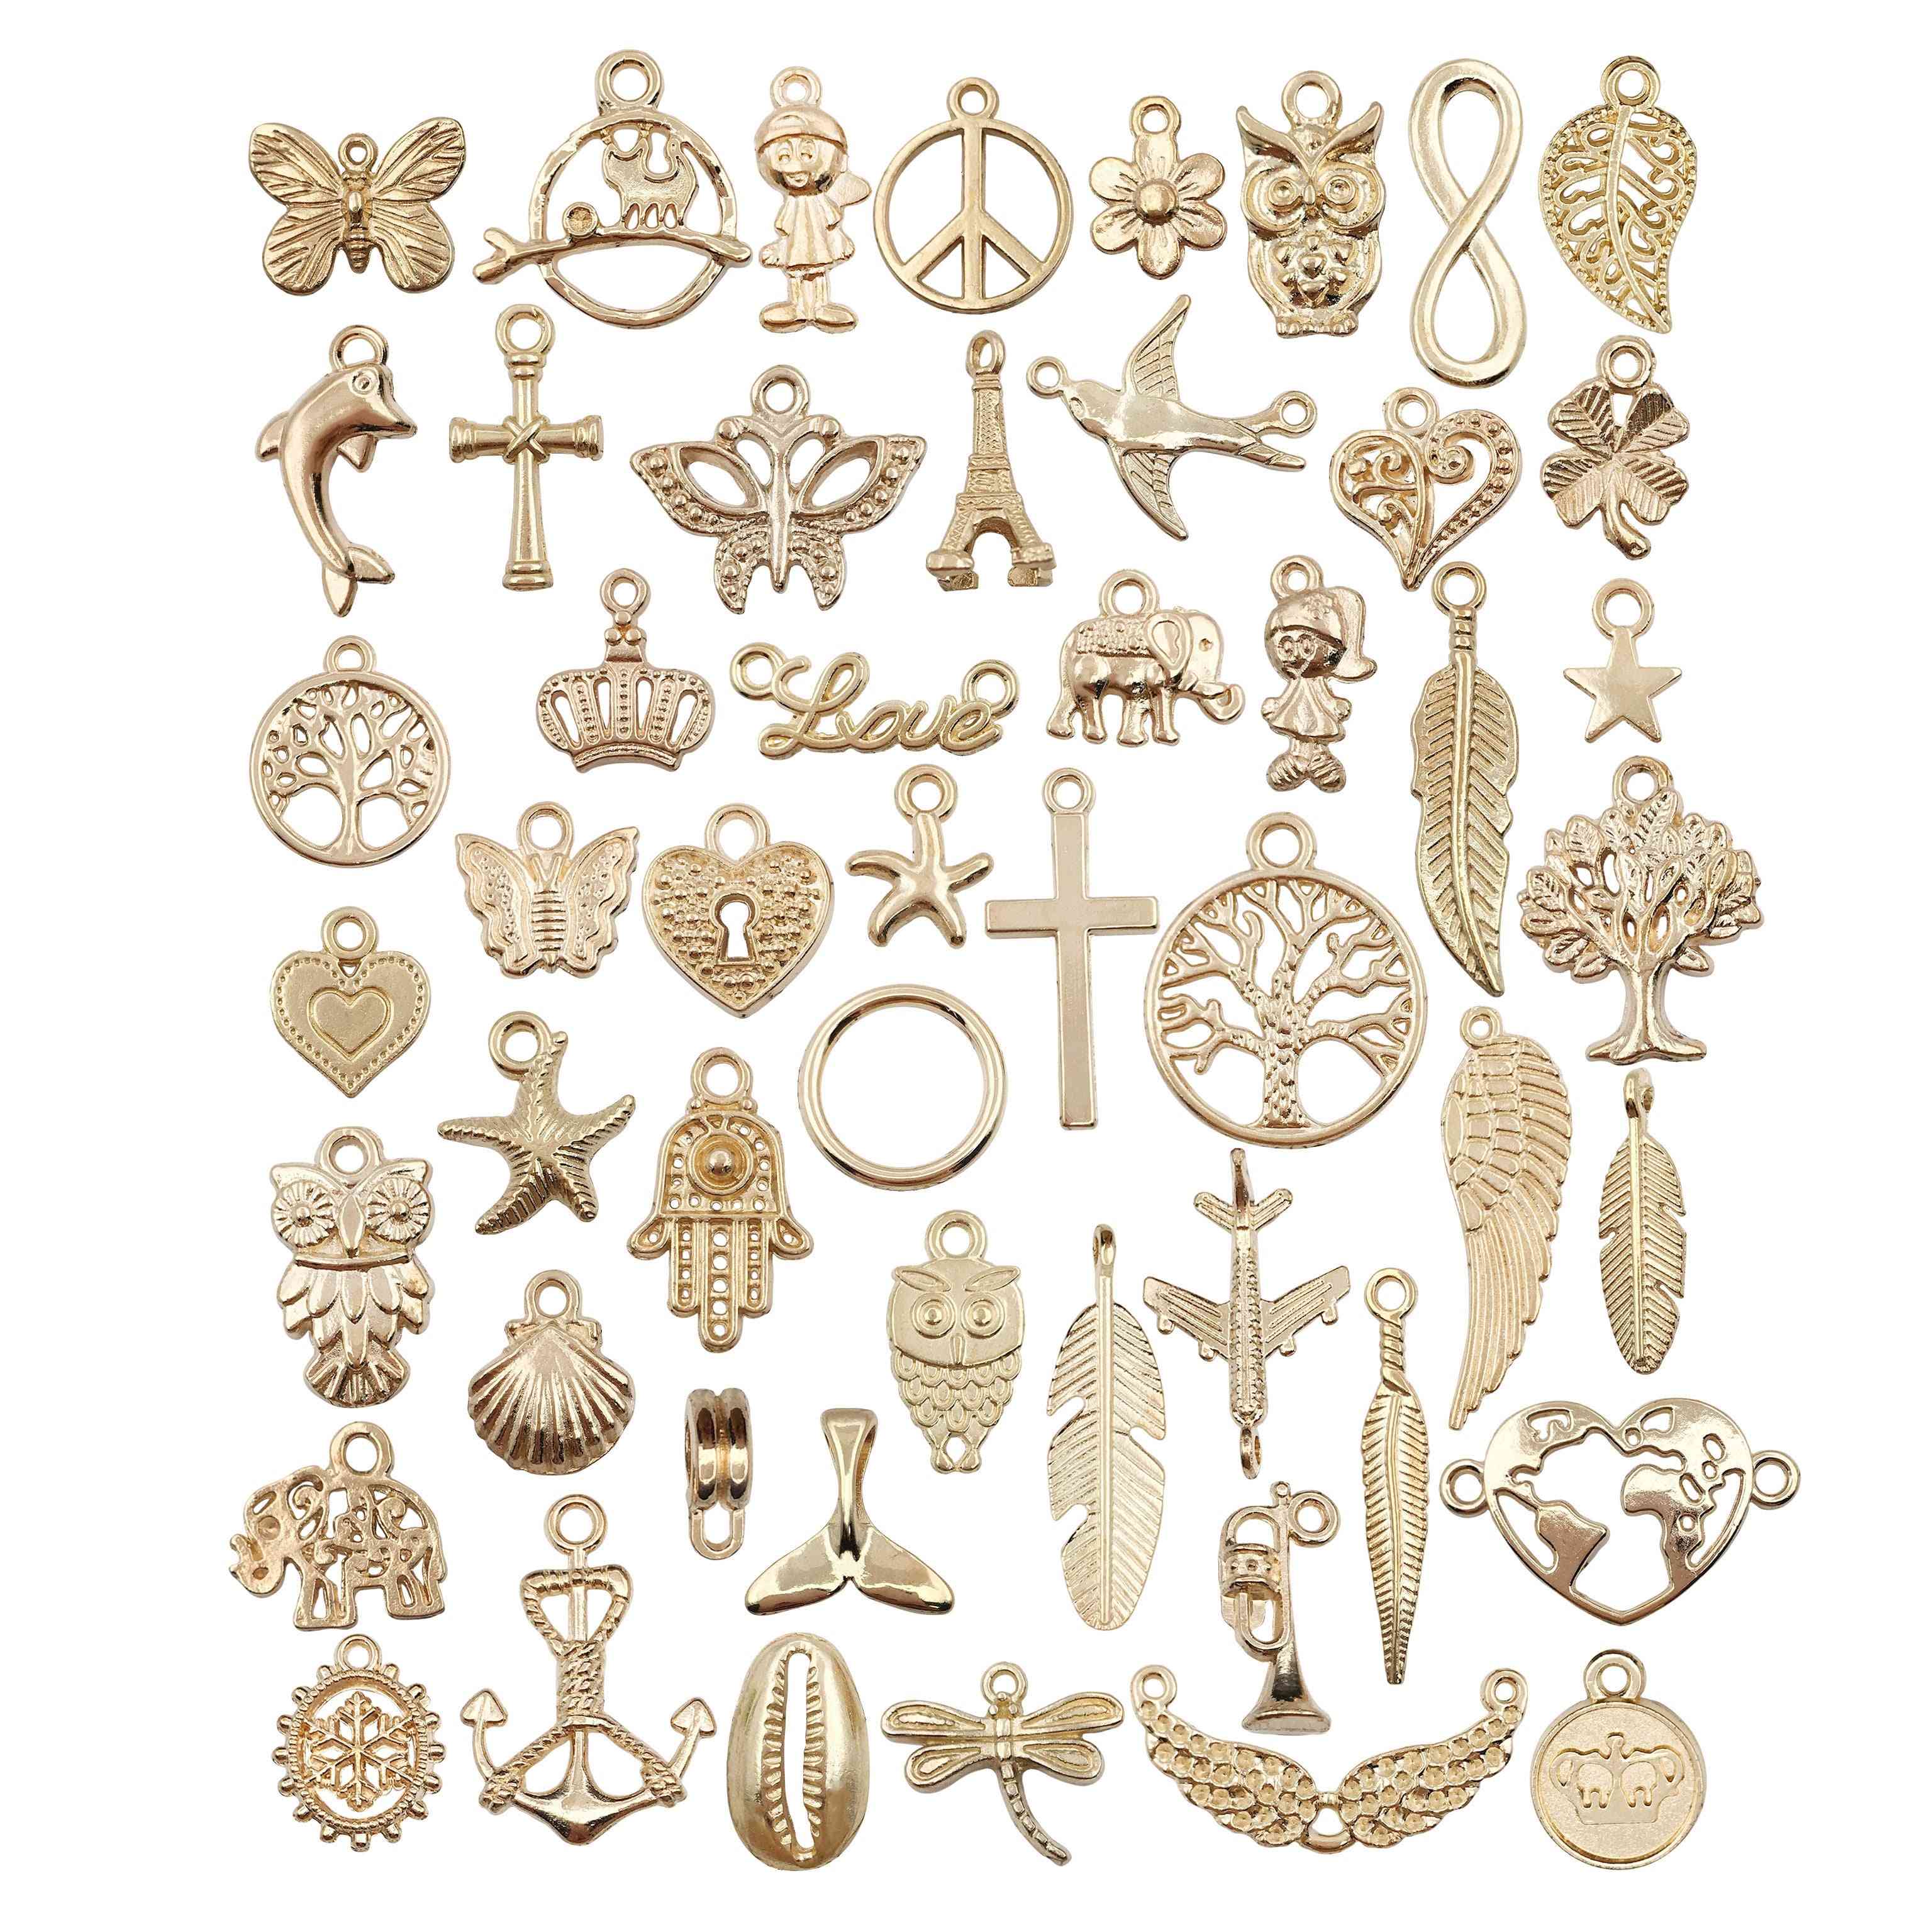 Pingentes com amuletos de animais, plantas, frutas, lua e estrelas para a fabricação de joias